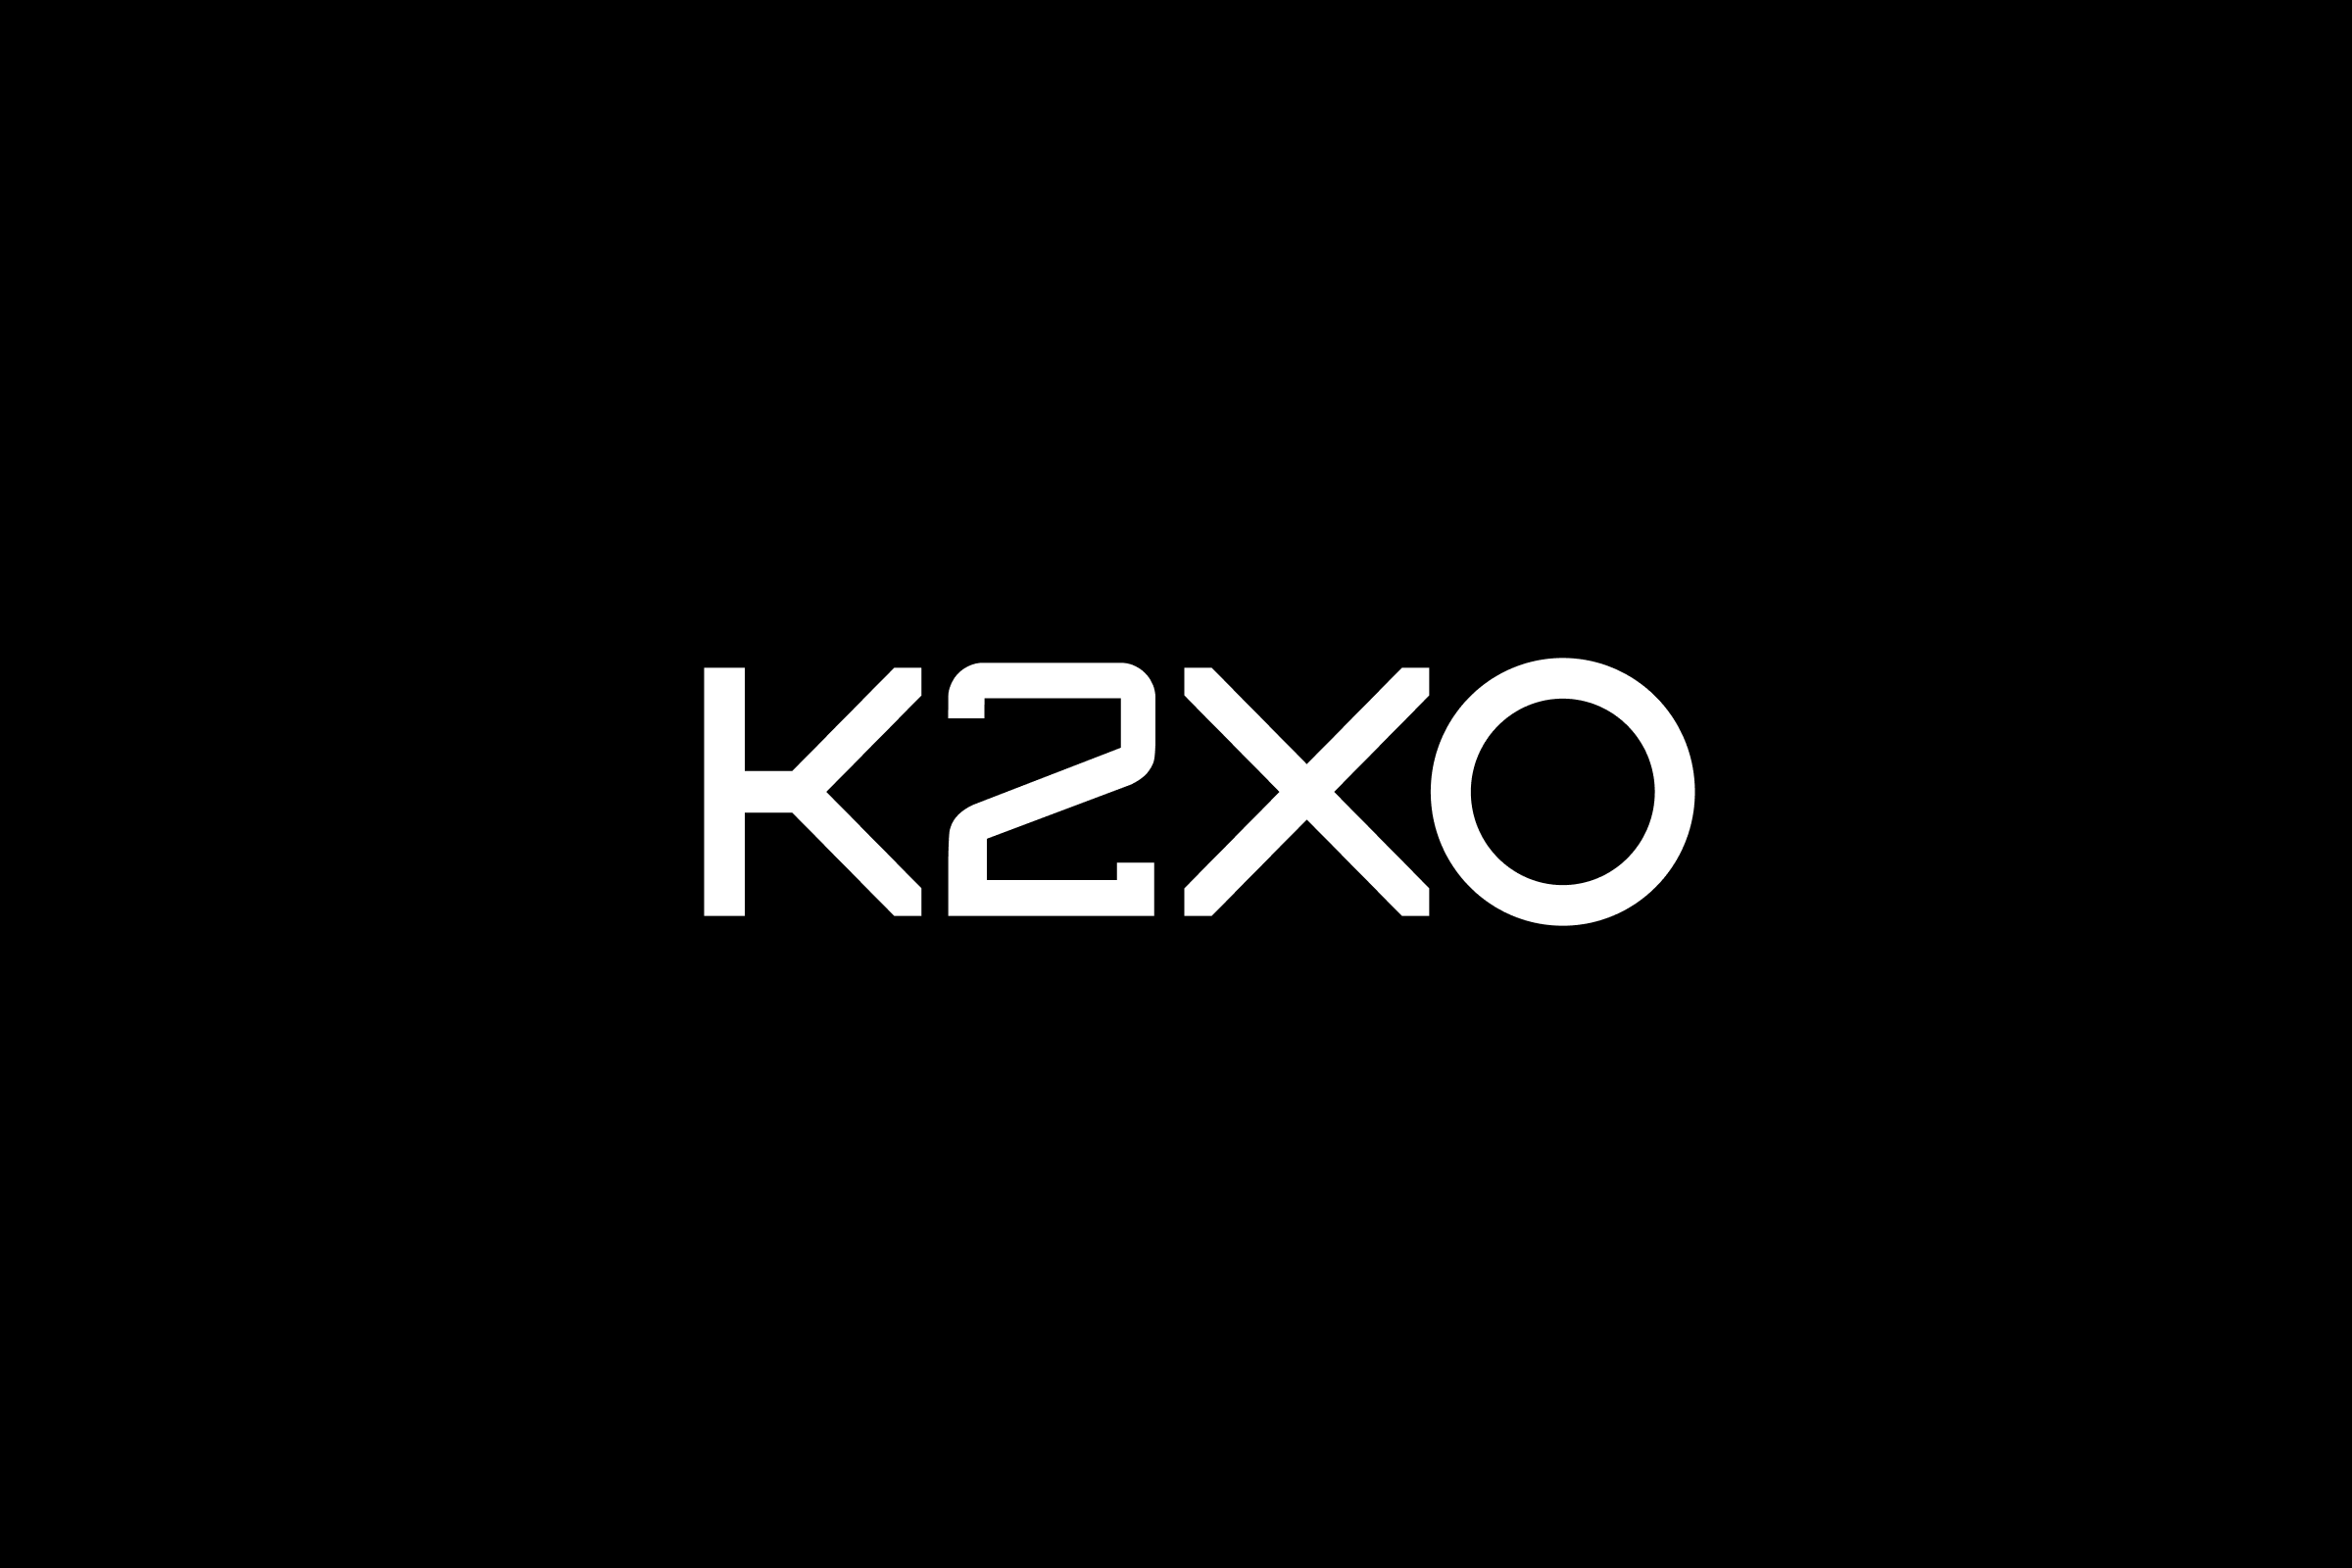 simon-p-coyle-branding-logo-design-2018-k2xo